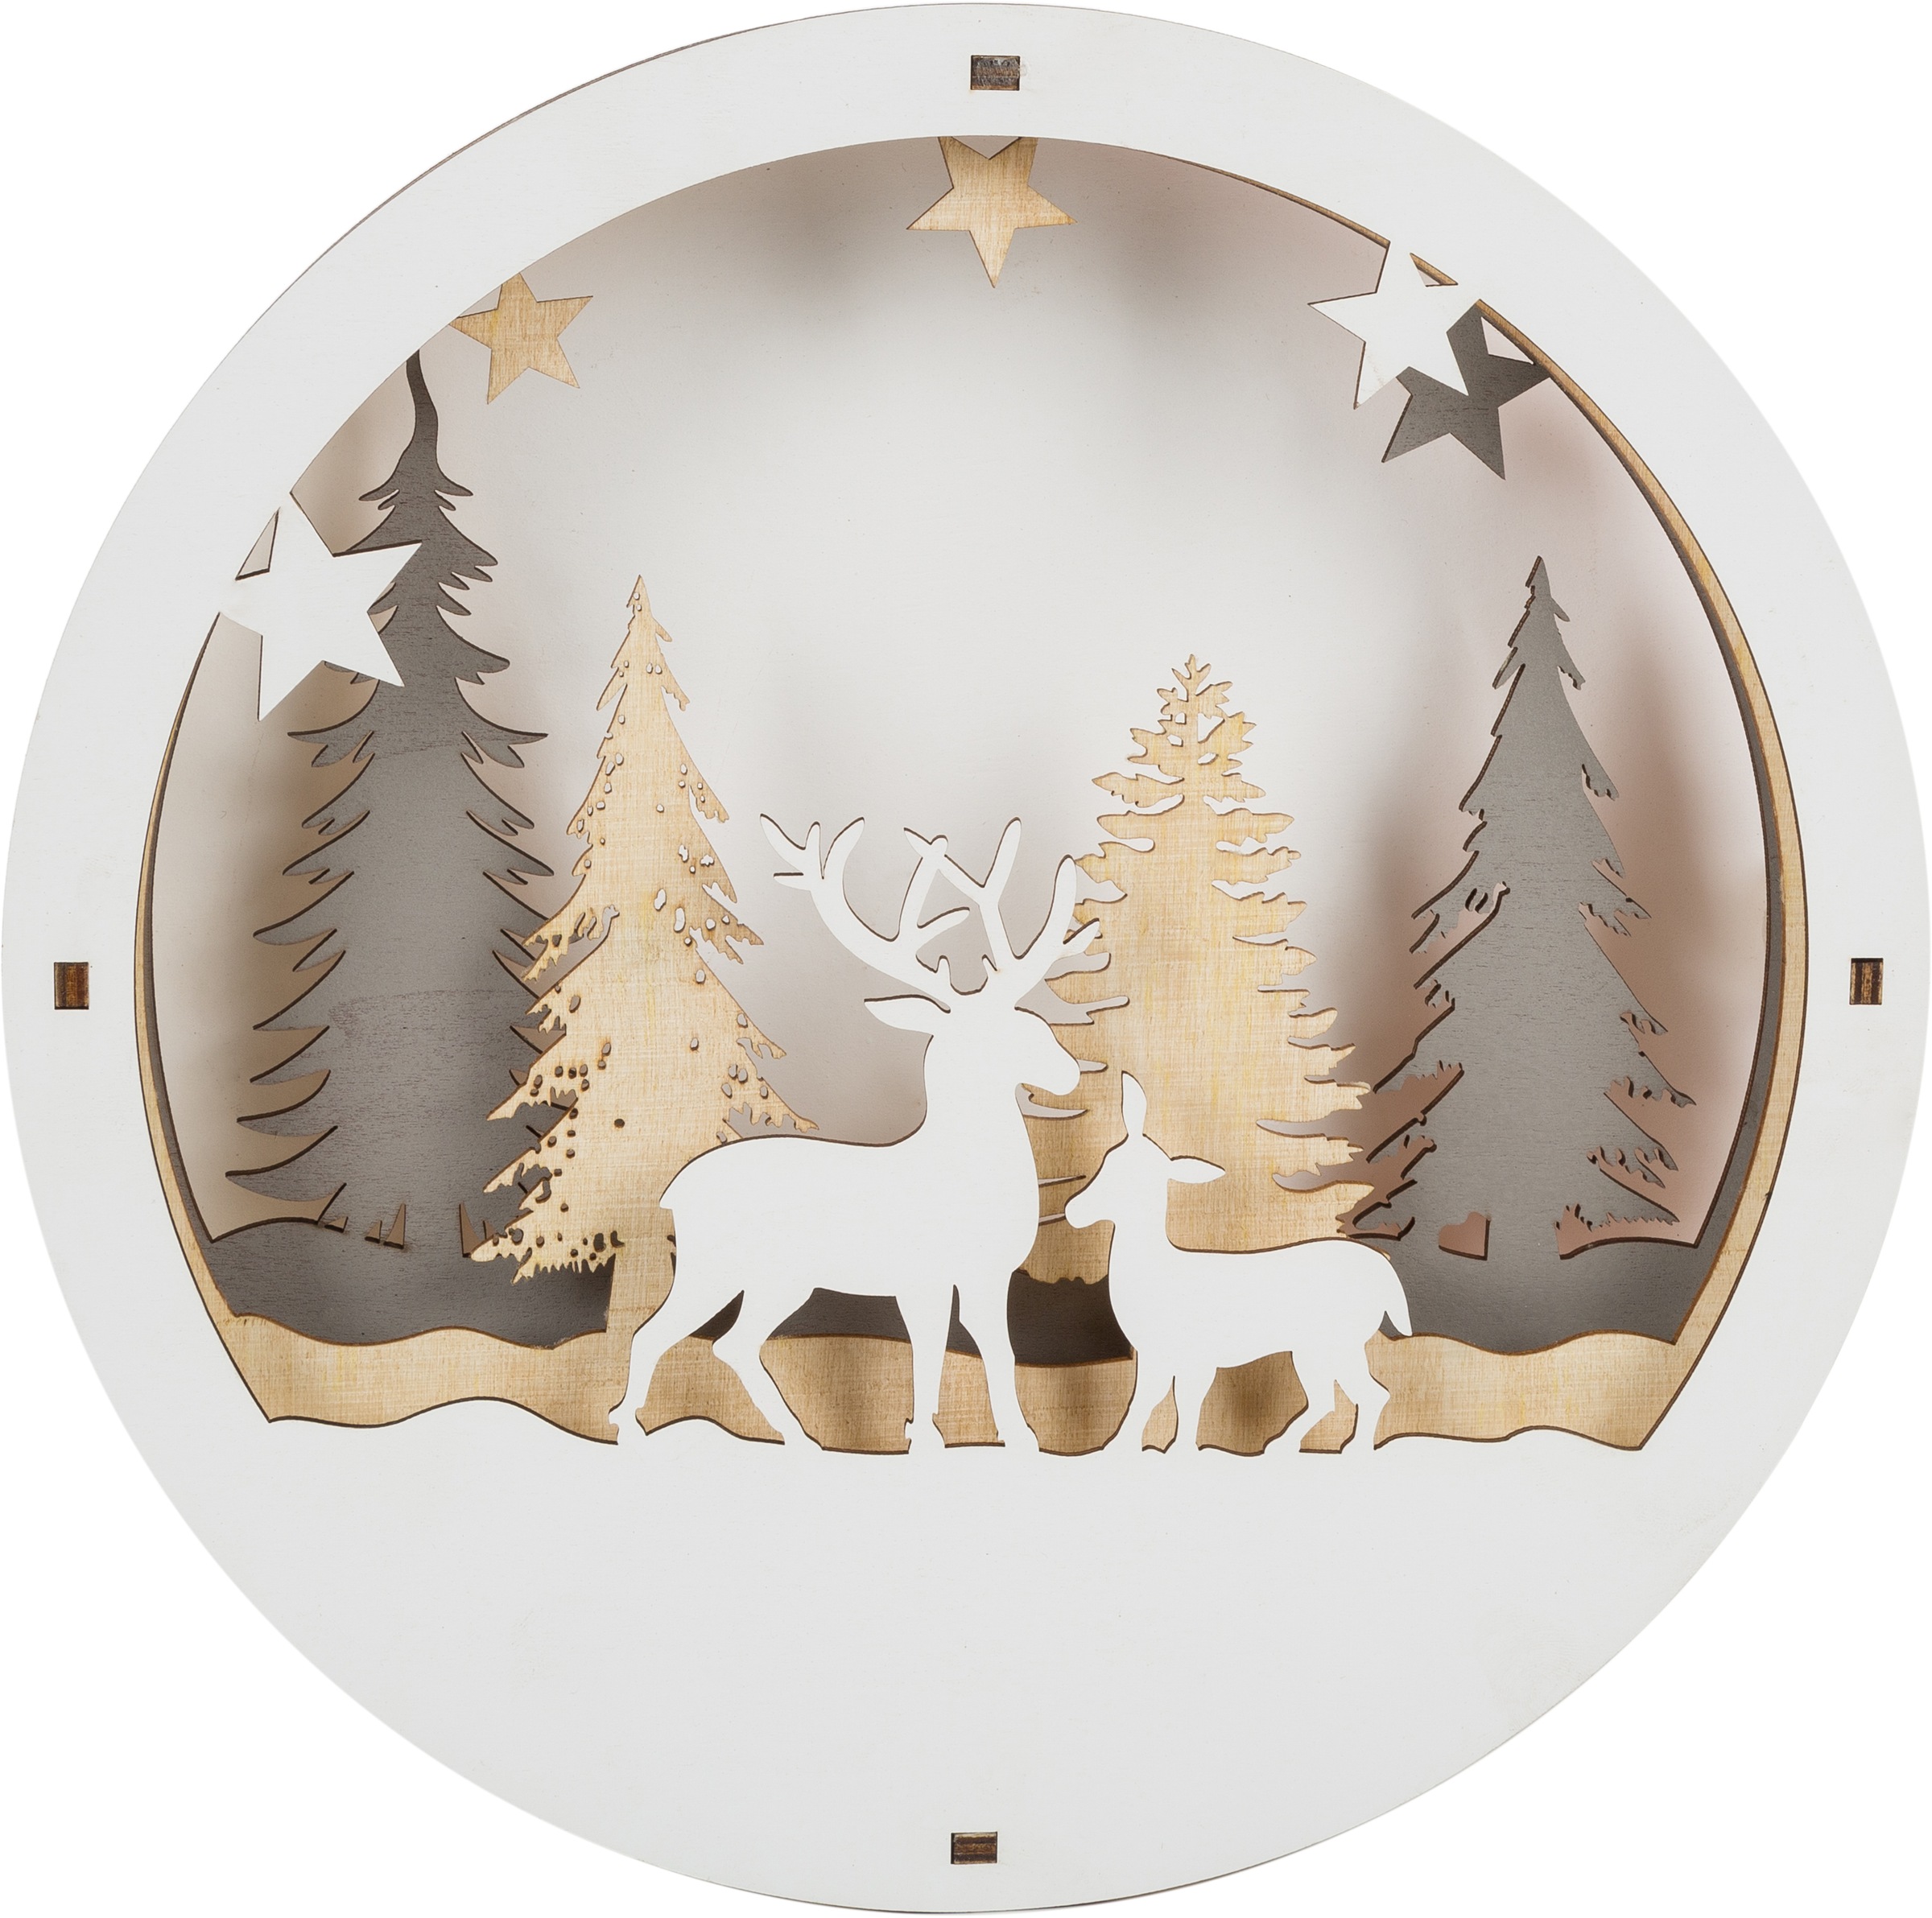 Myflair Möbel & Accessoires Weihnachtsszene Winterszenerie, günstig ca. kaufen mit online Höhe cm 29 LED Beleuchtung, »Weihnachtsdeko«